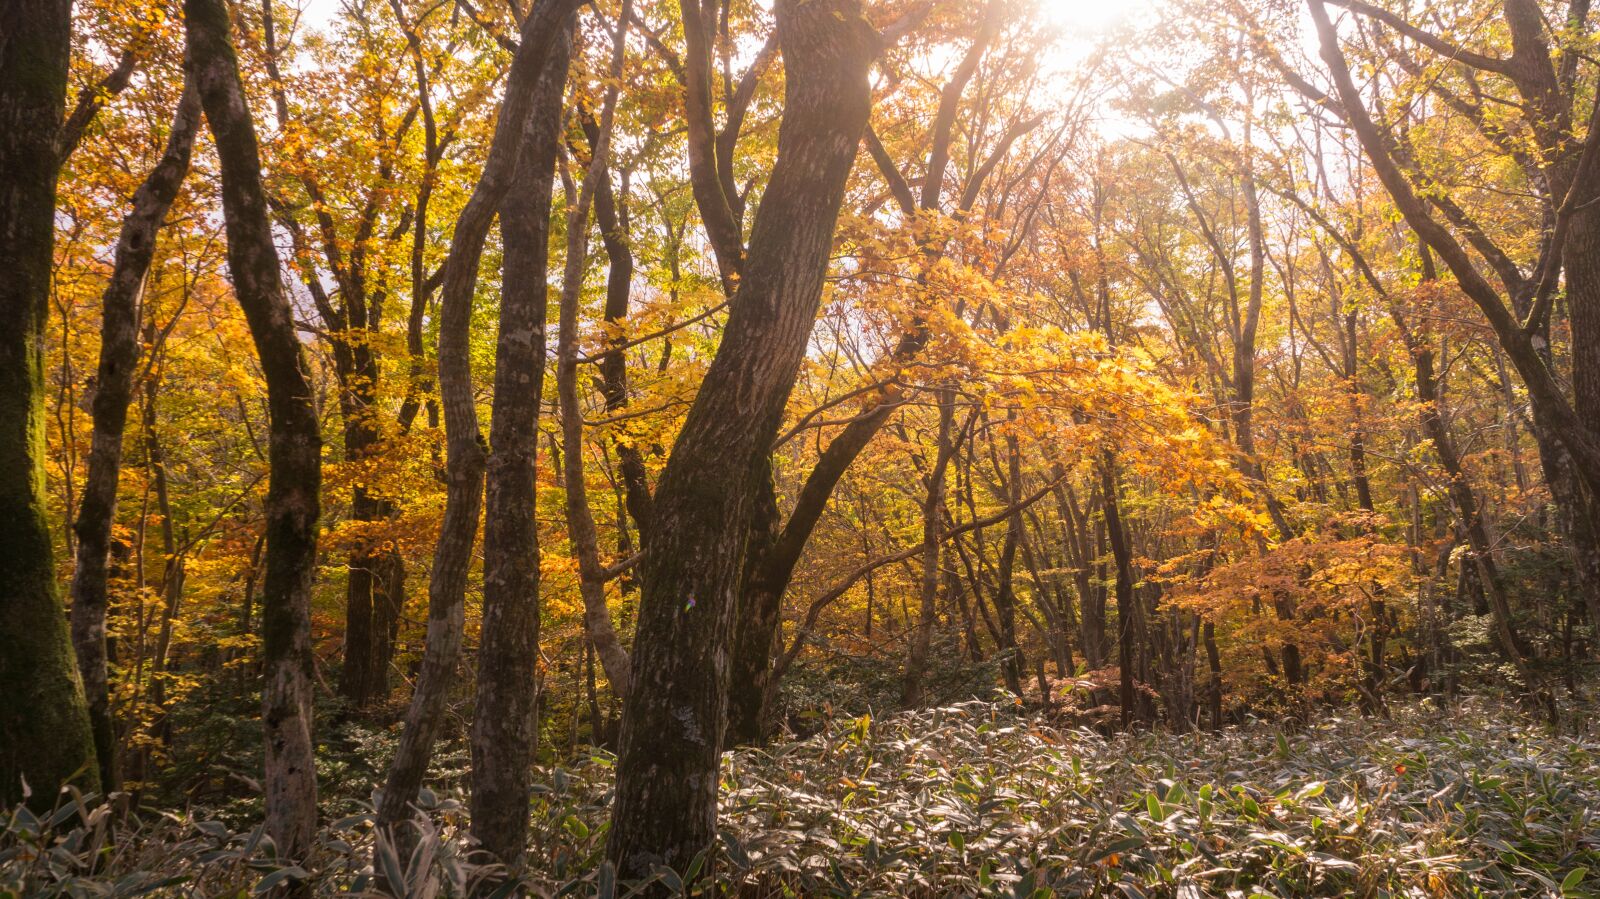 Sony Alpha NEX-5N sample photo. Autumn, autumn leaves, wood photography